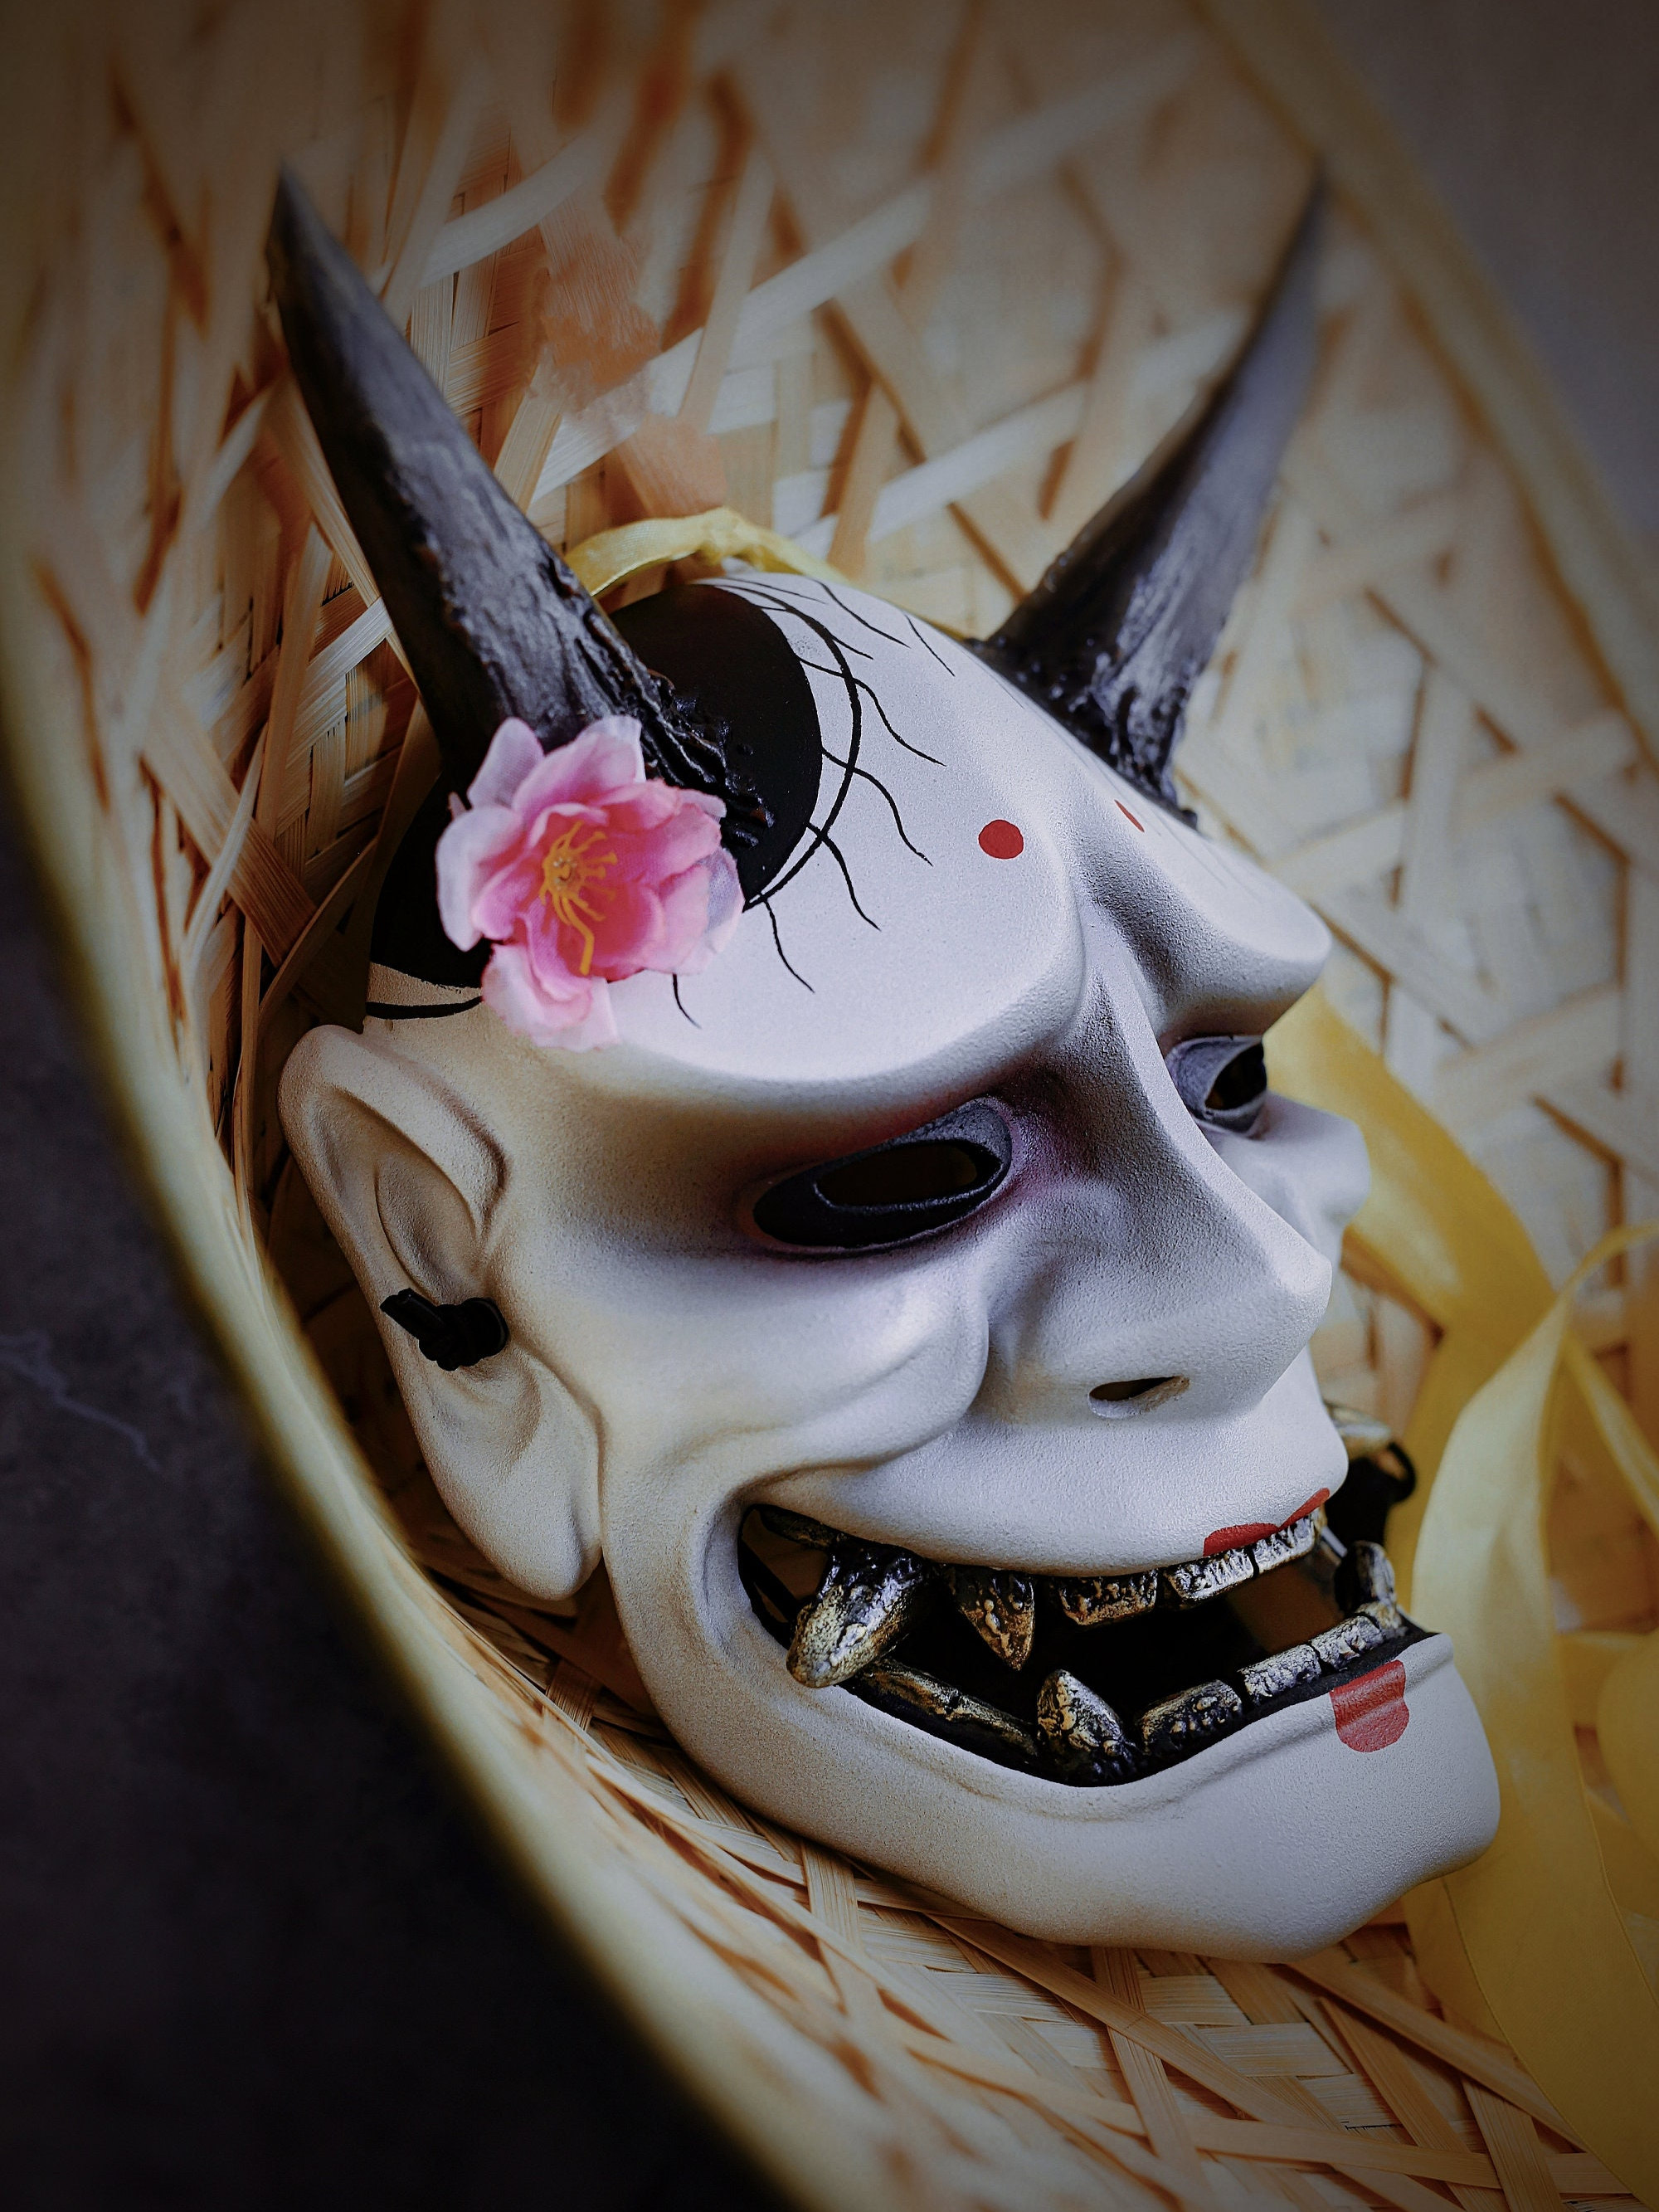 Japanese Hannya White Mask – Japanese Oni Masks